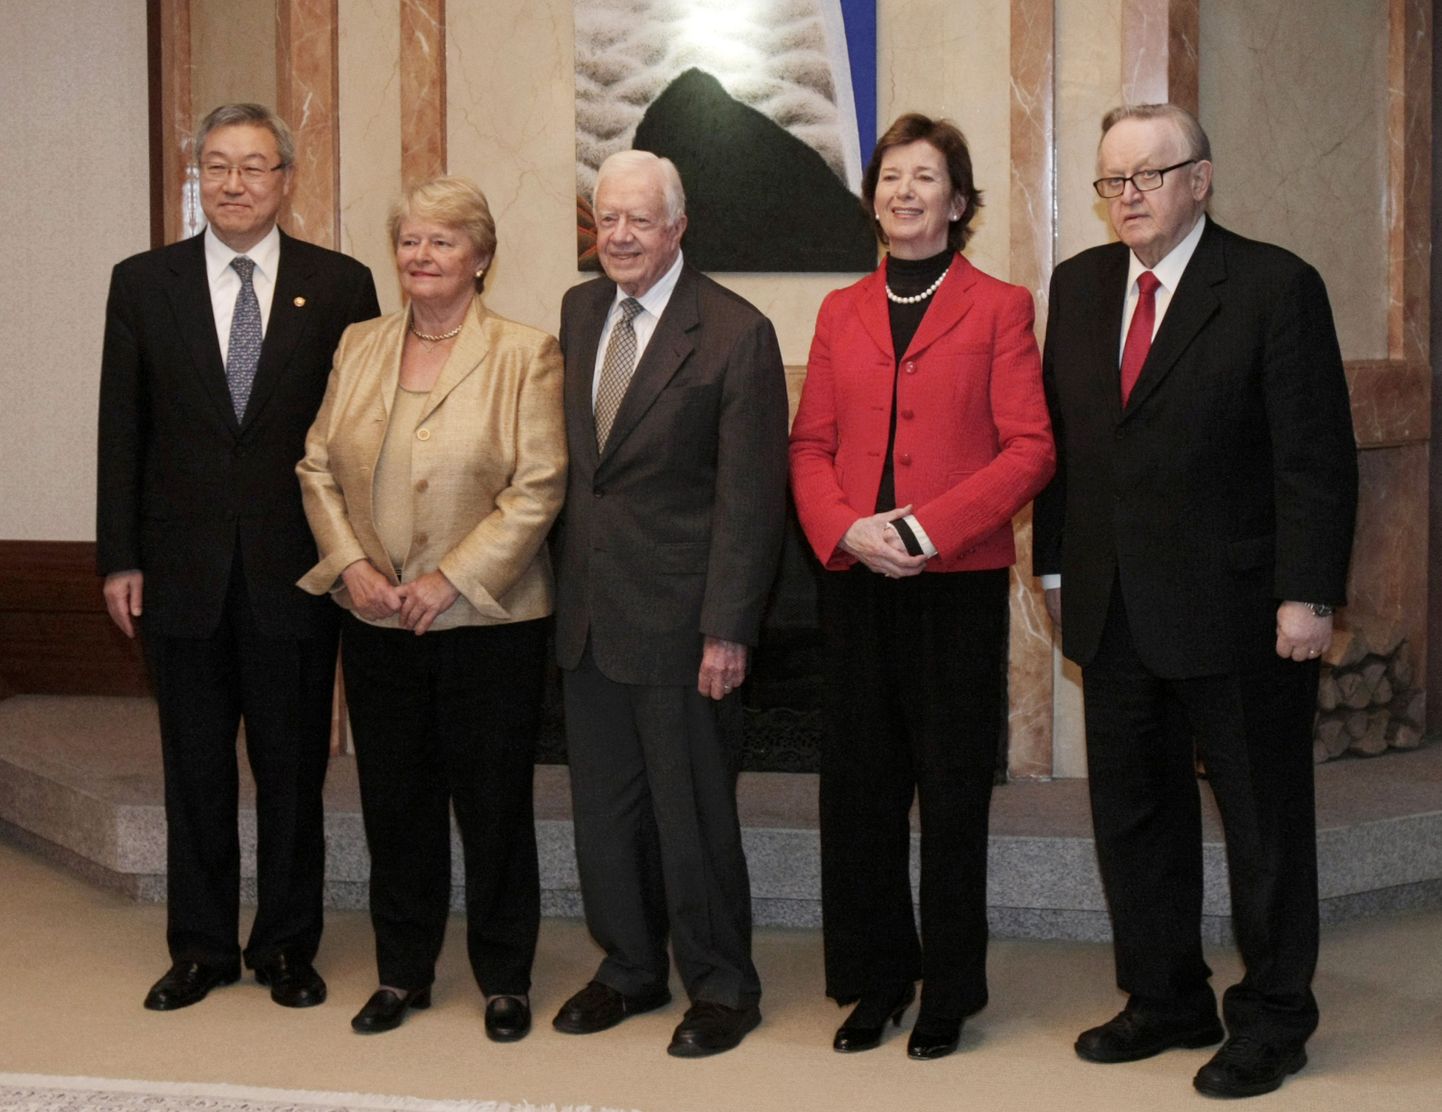 Paremalt Soome ekspresident Martti Ahtisaari, Iiri ekspresident Mary Robinson, USA ekspresident Jimmy Carter, Norra endine valitsusjuht Gro Harlem Brundtland ja Lõuna-Korea välisminister Kim Sung-hwan.